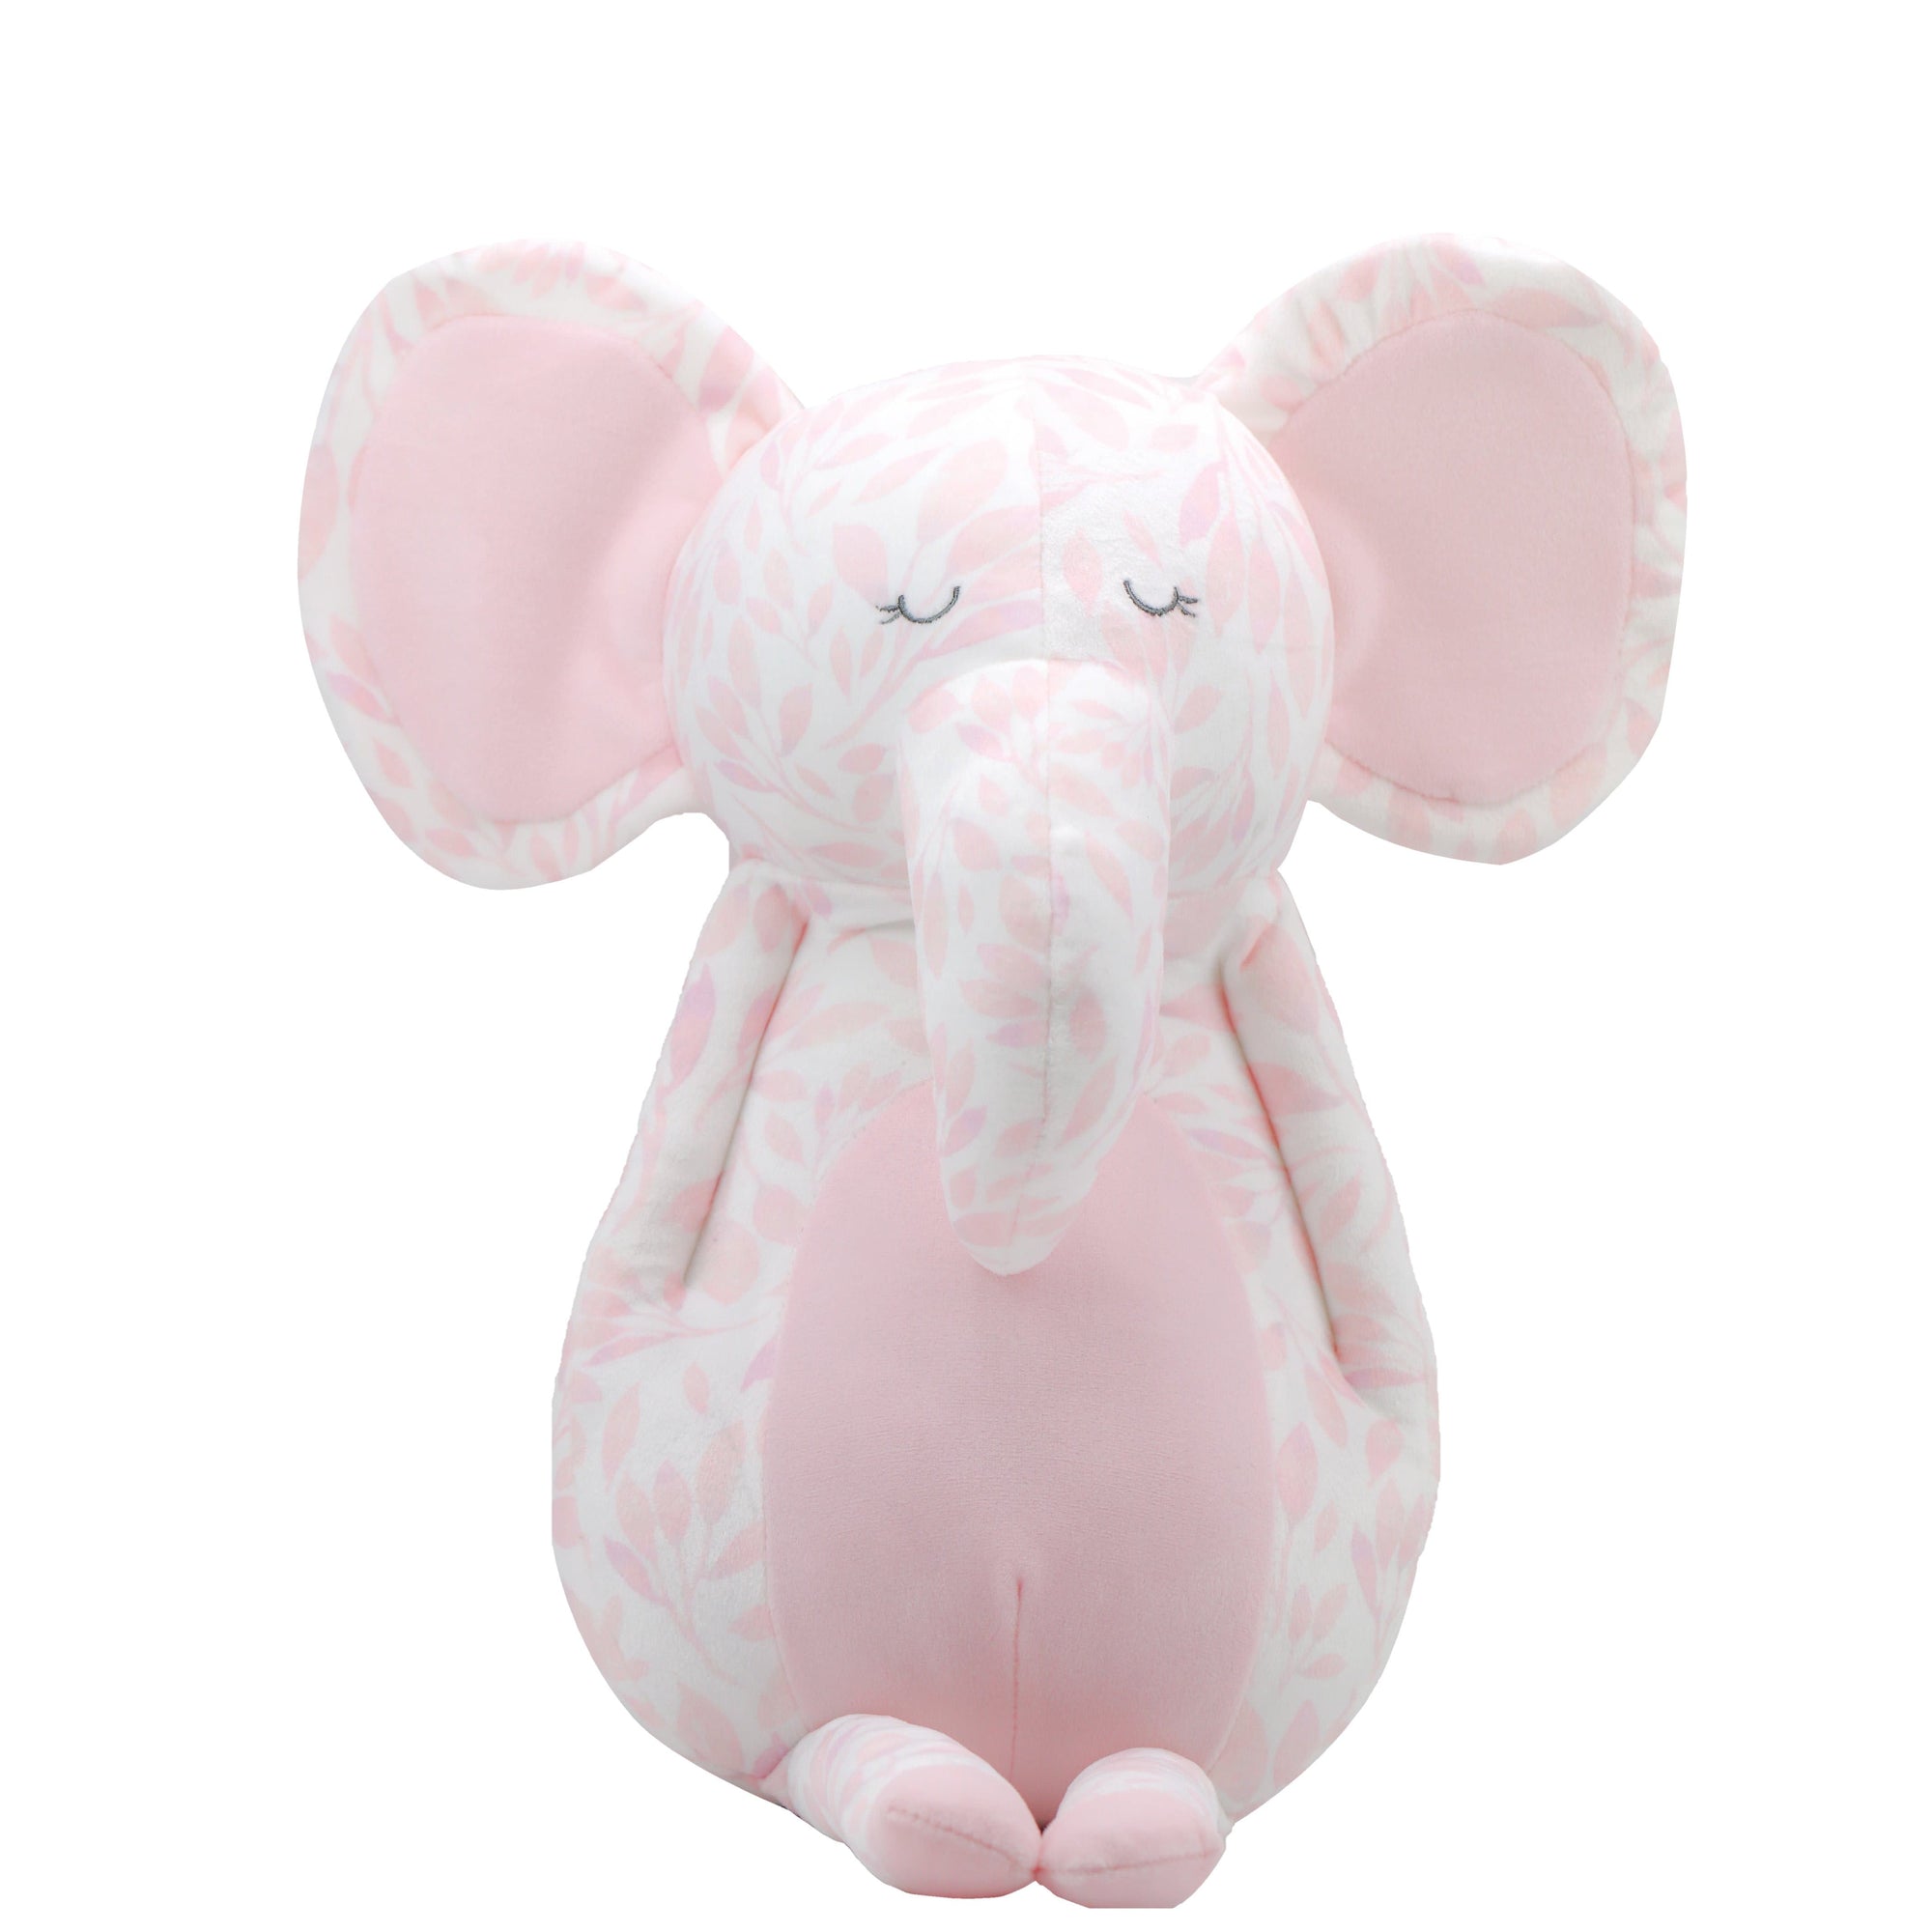 Goosewaddle Super Soft Plush Elephant - Poppy 15"